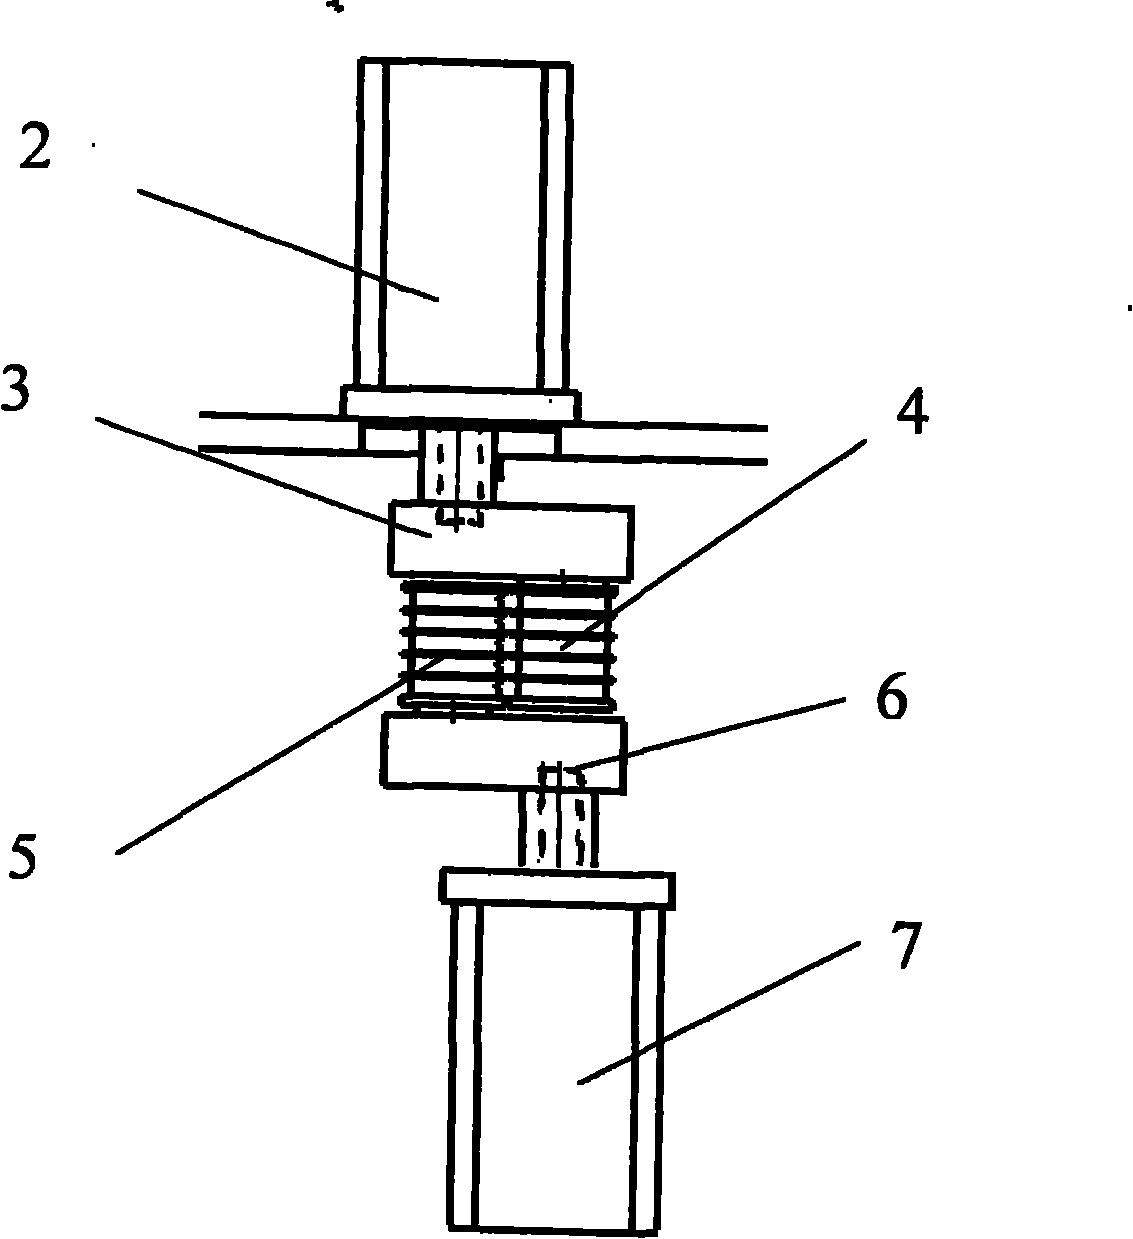 Bending double-shaft mechanism